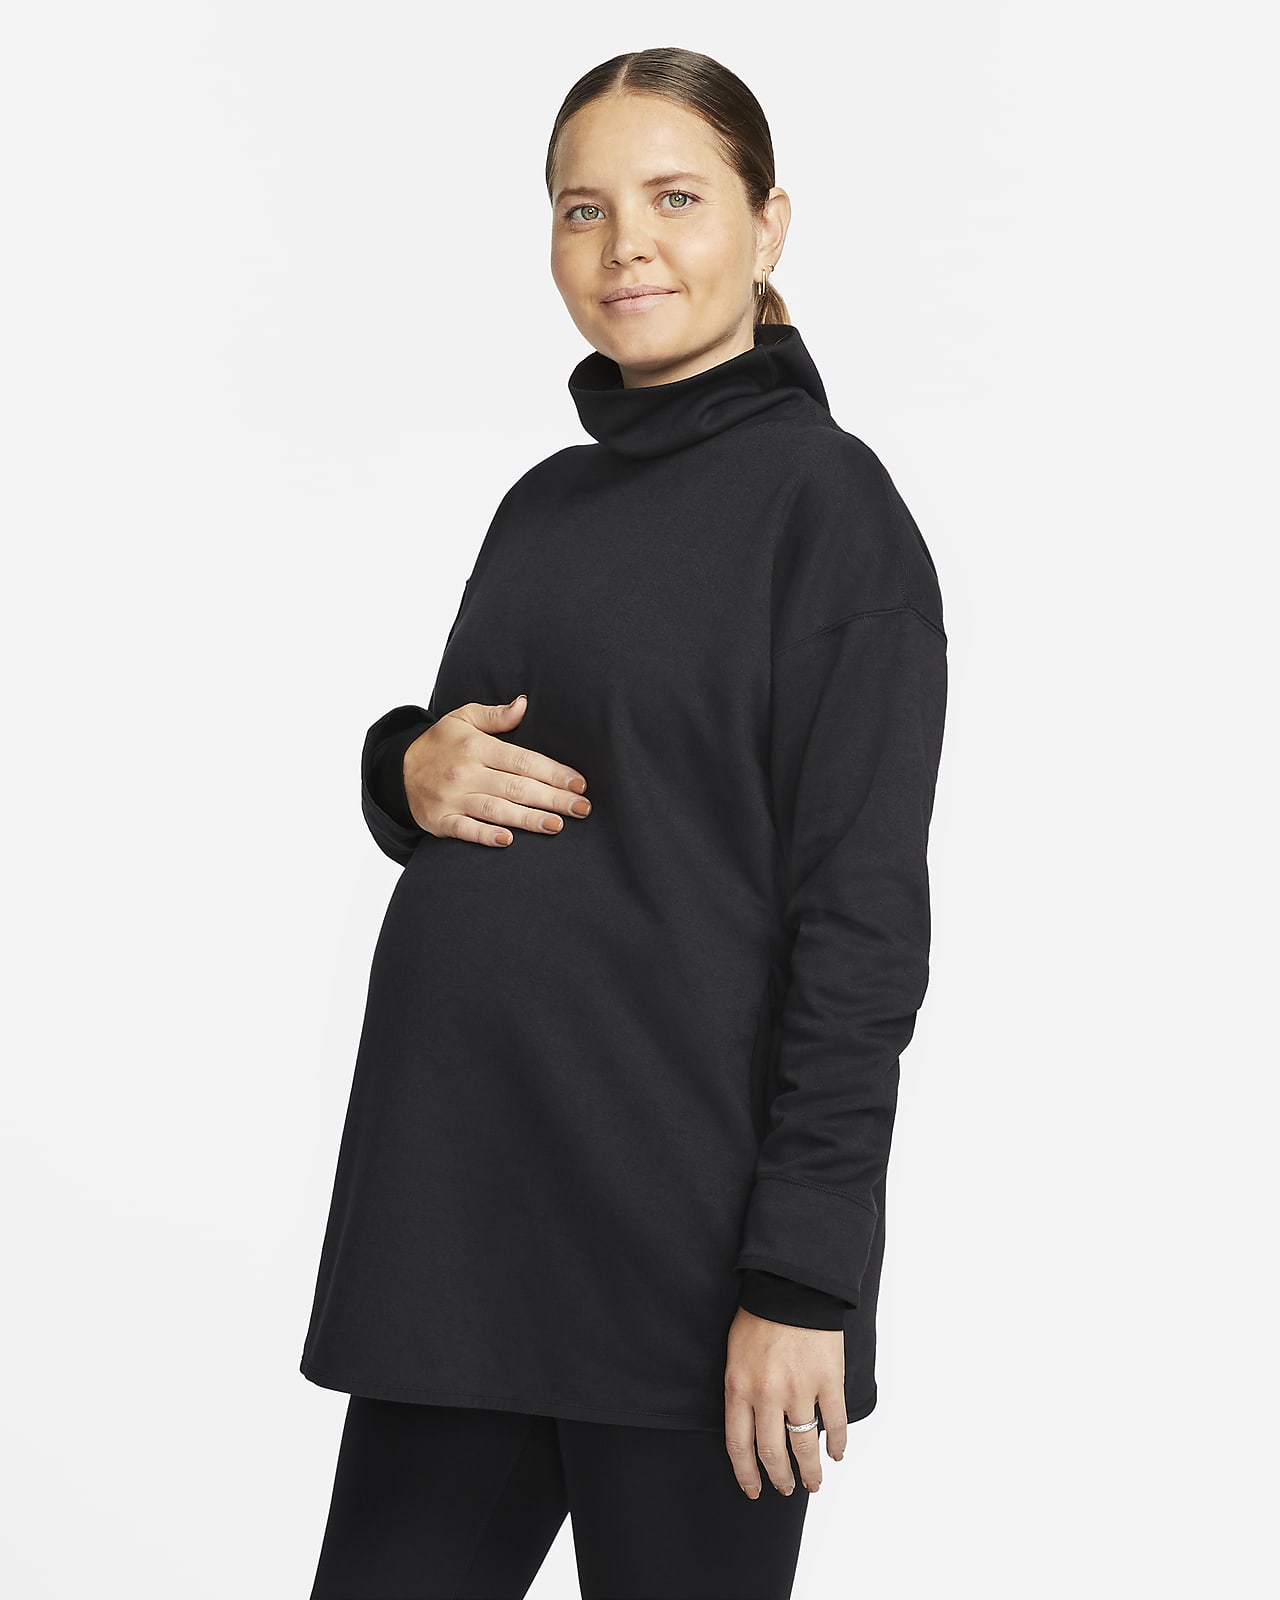 NA Womens Nursing Hoodie Sweatshirt Breastfeeding Tops Long Sleeve Zip  Pullover Hoodie with Pockets, Maternity Sweatshirt,Black,S